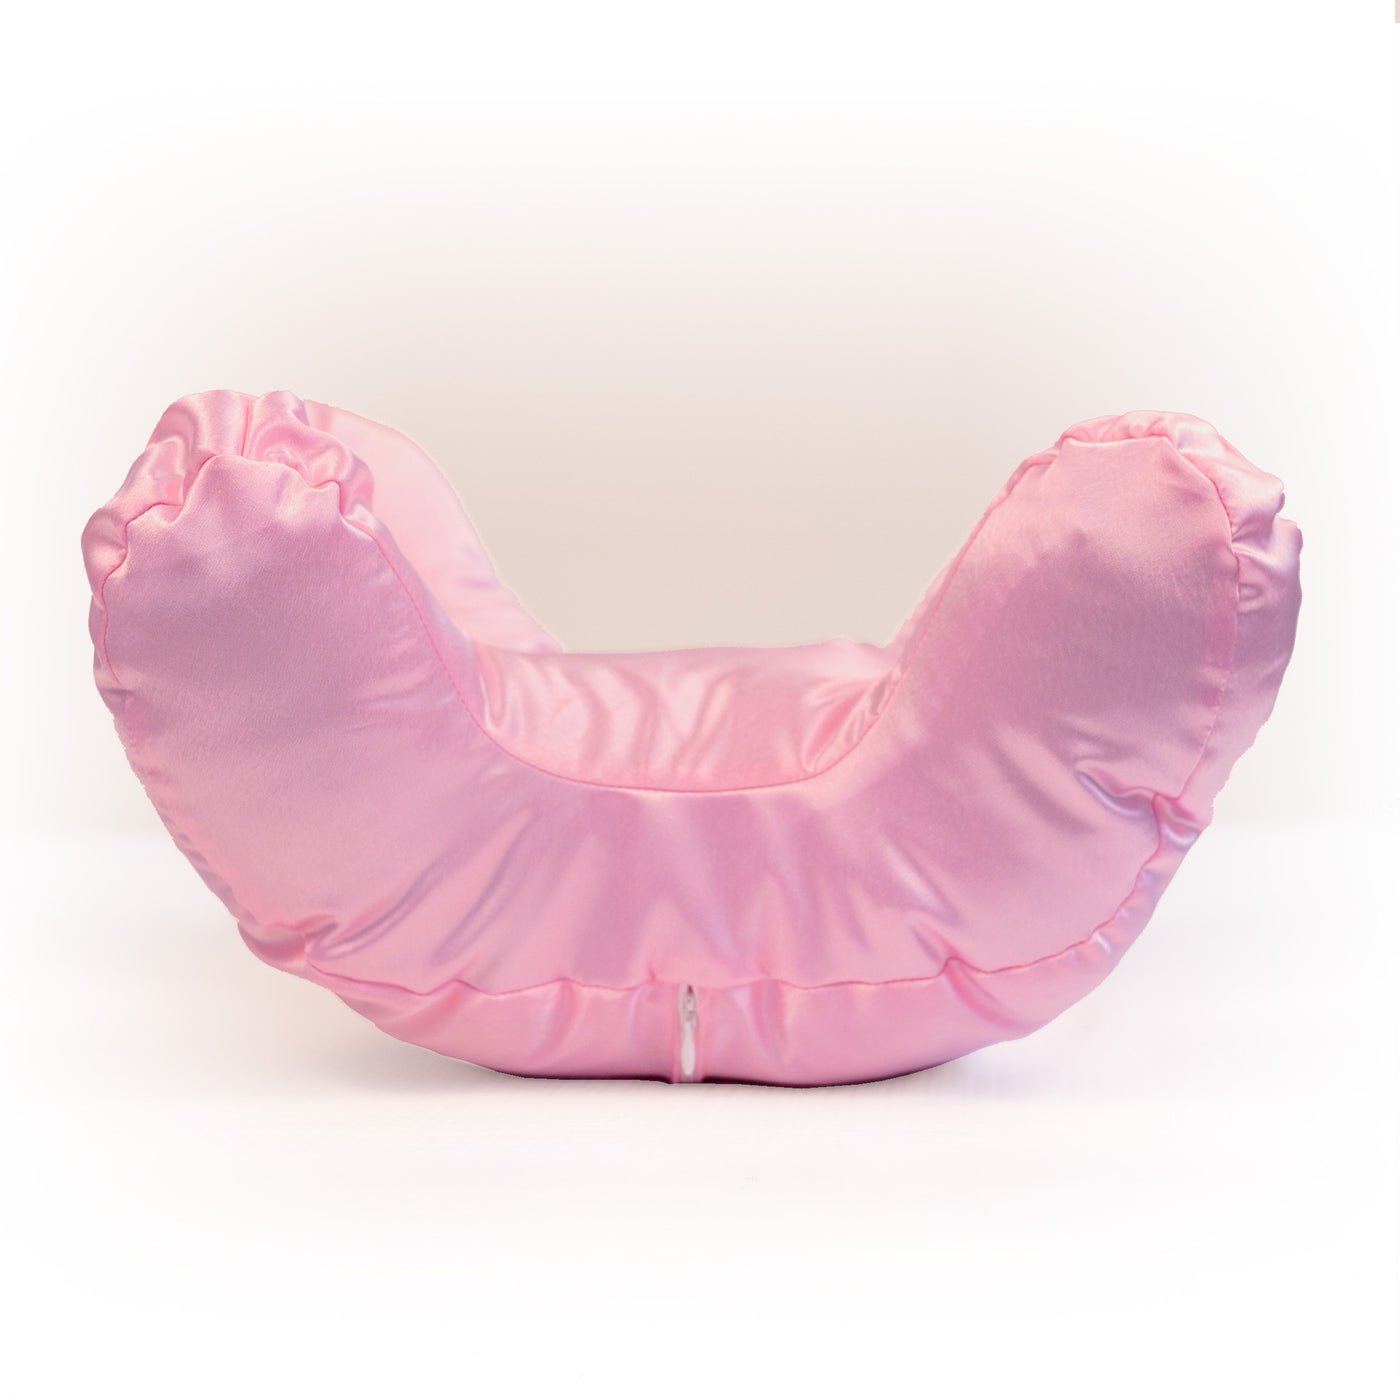 NEW Flawless Face Pillow Cloud + FREE Bubblegum Pink Pillowcase